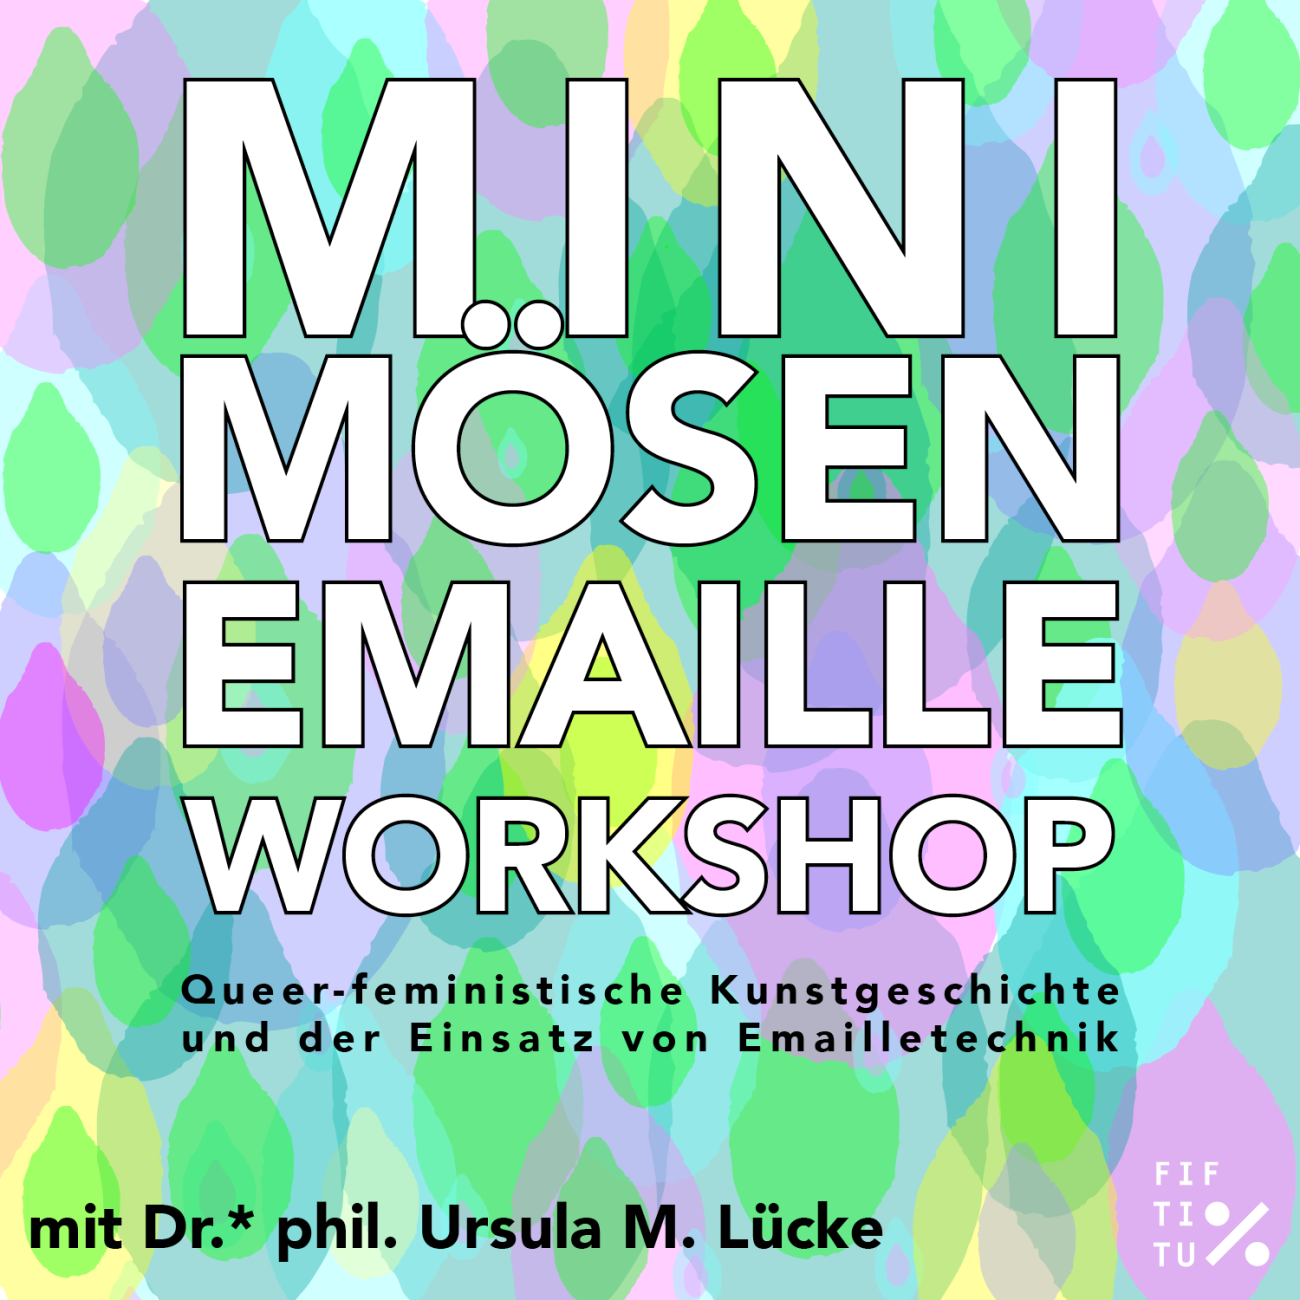 Workshop mit Dr.* phil. Ursula M. Lücke